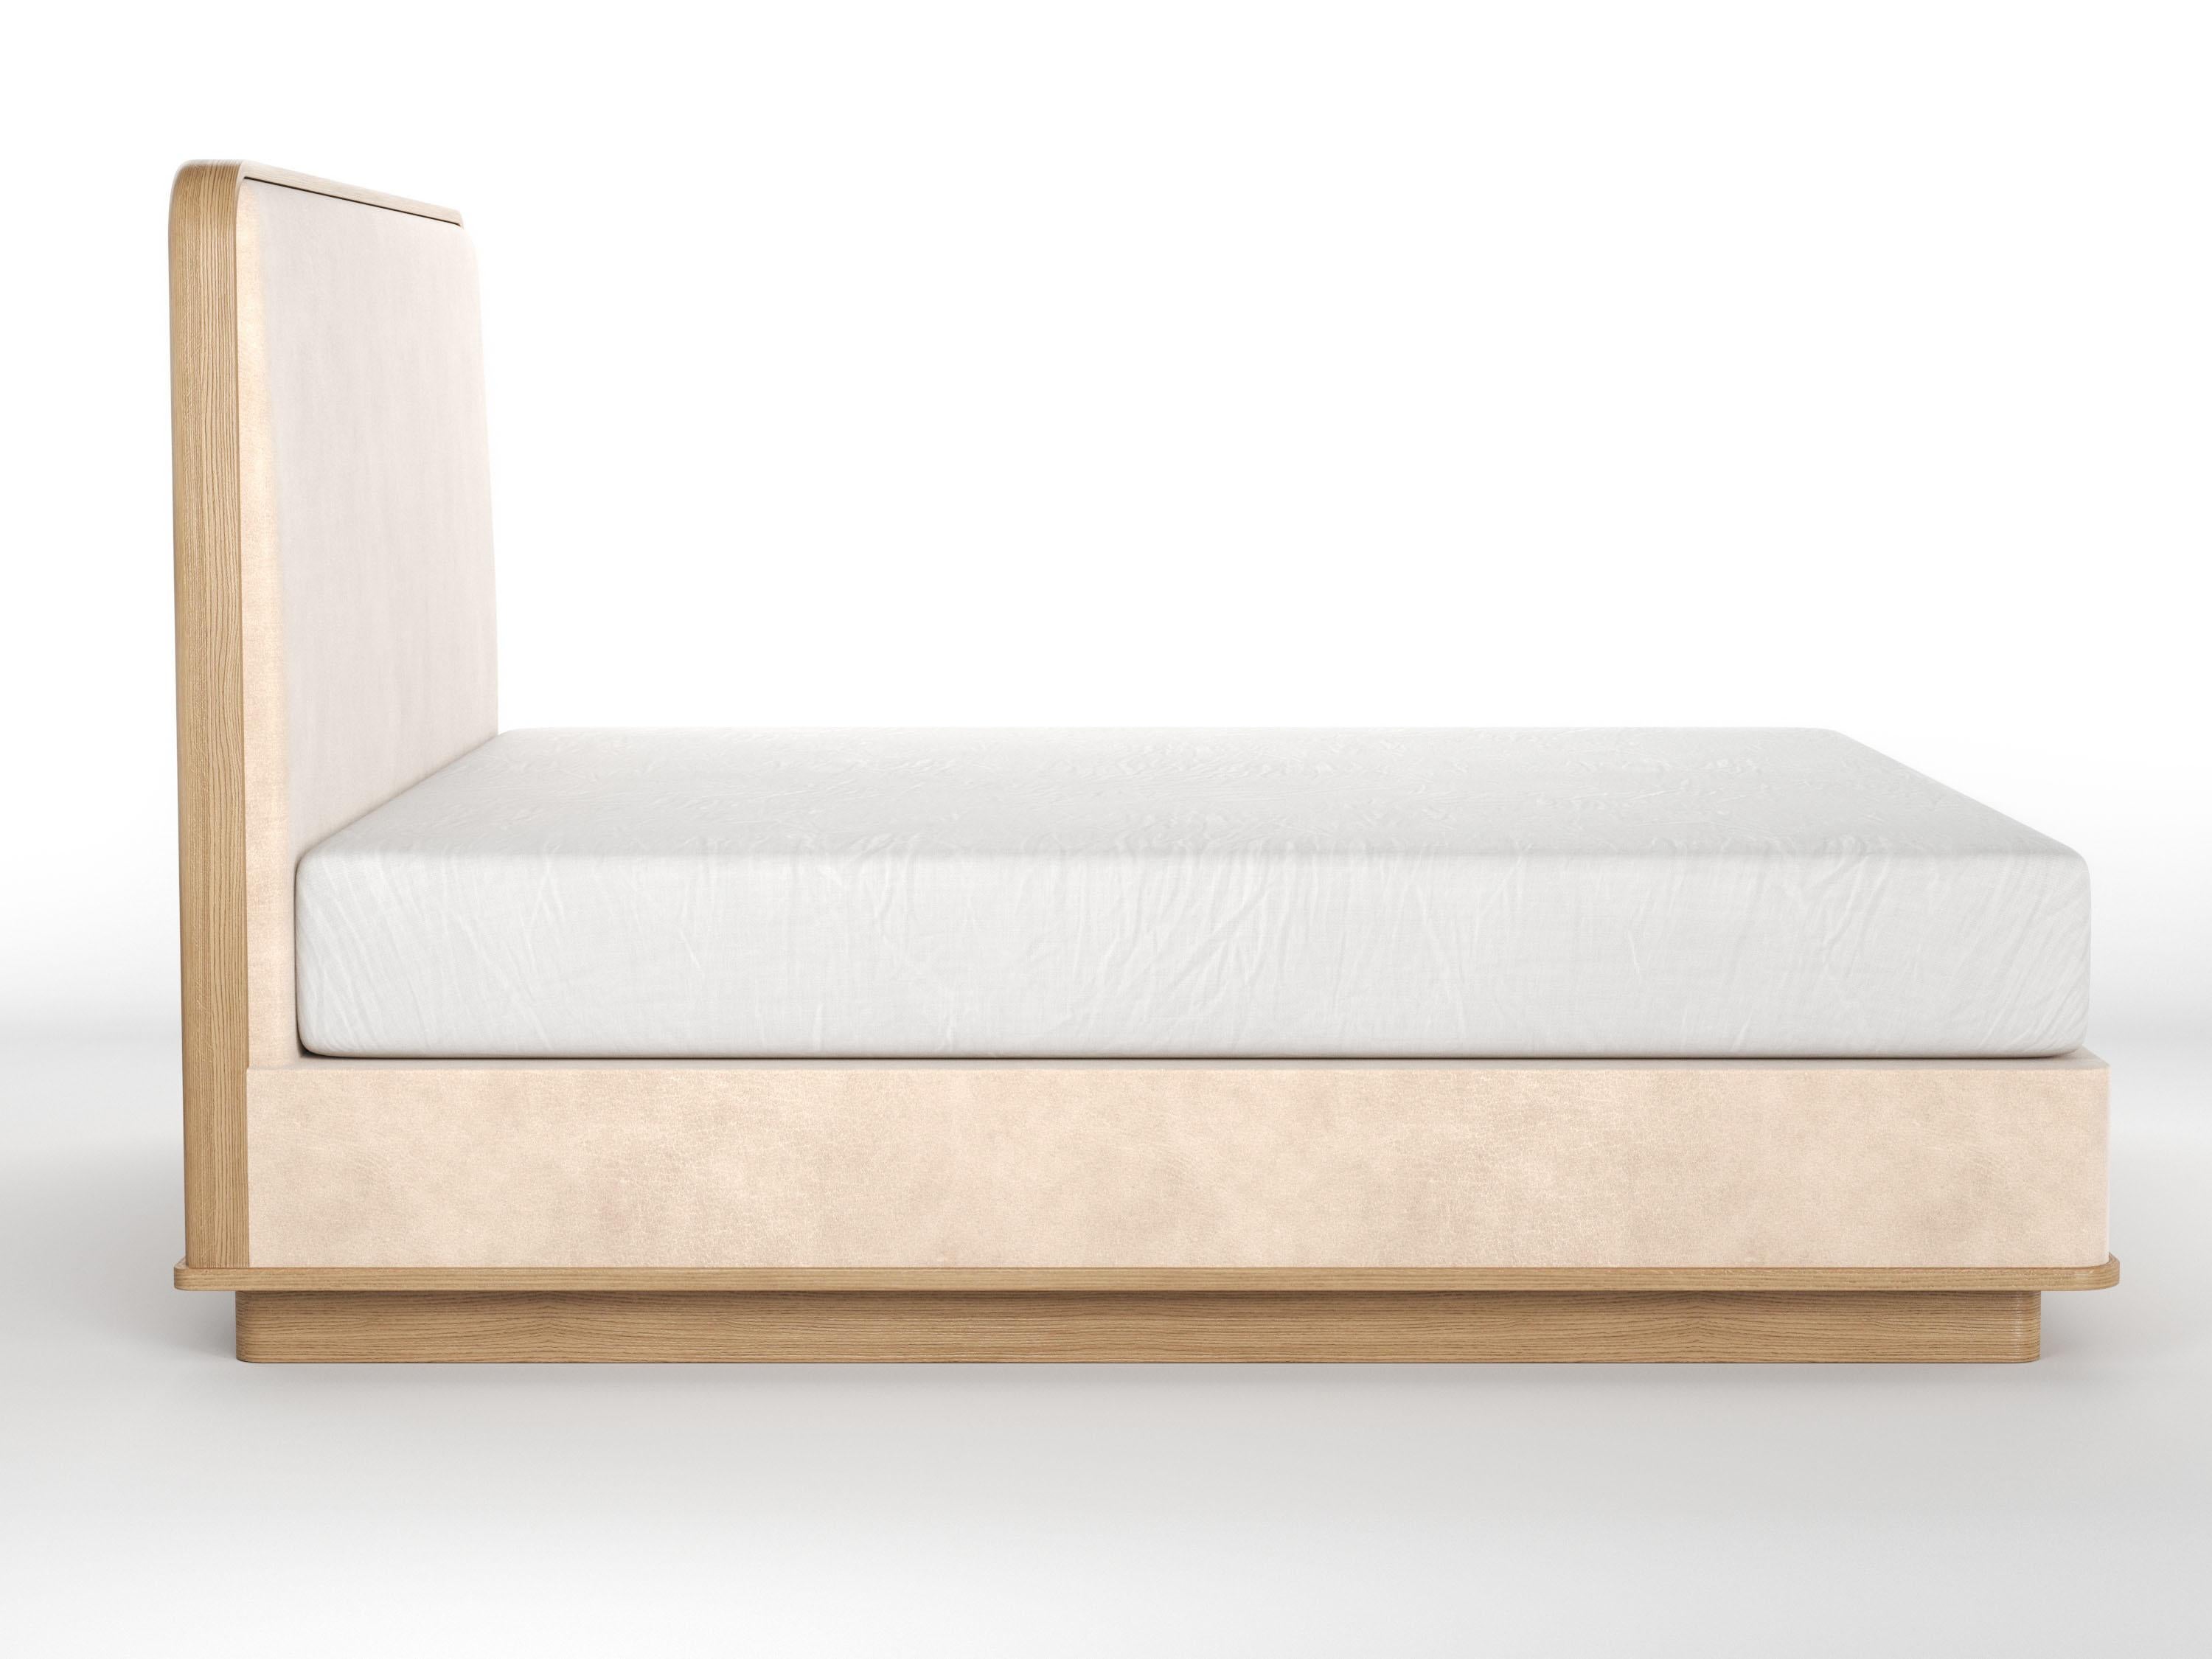 Le lit Cooper est présenté avec une tête de lit recouverte d'un panneau uni et habillée d'une garniture en bois, avec des rails recouverts d'un revêtement, et reposant sur une plate-forme en bois et une base en bois encastrée. Tous ces produits sont